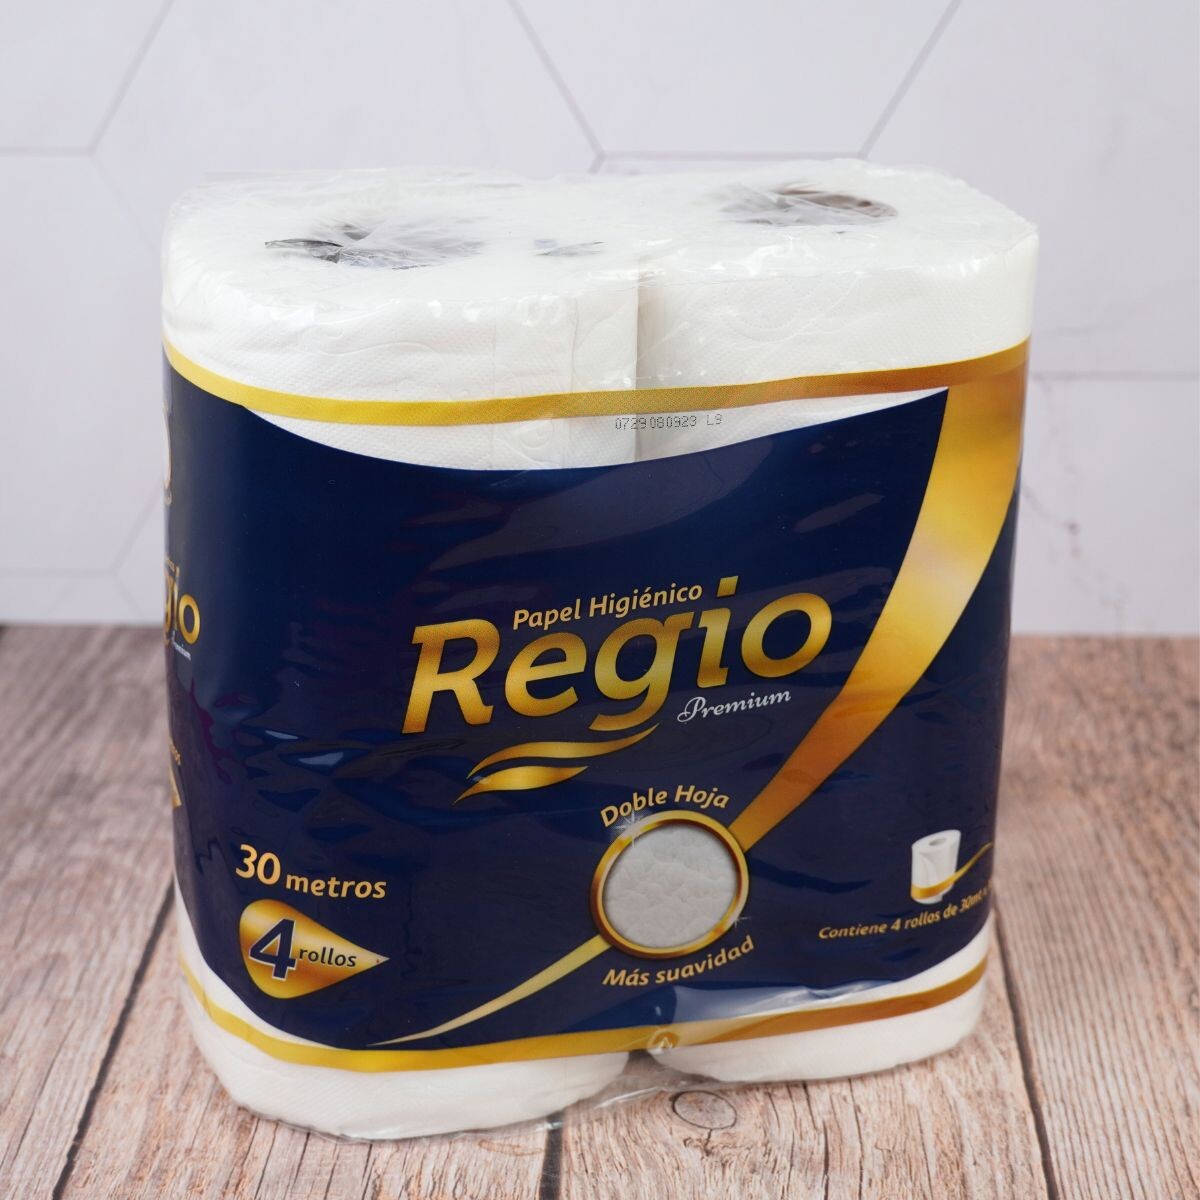 Papel higiénico Regio premium doble hoja x4 